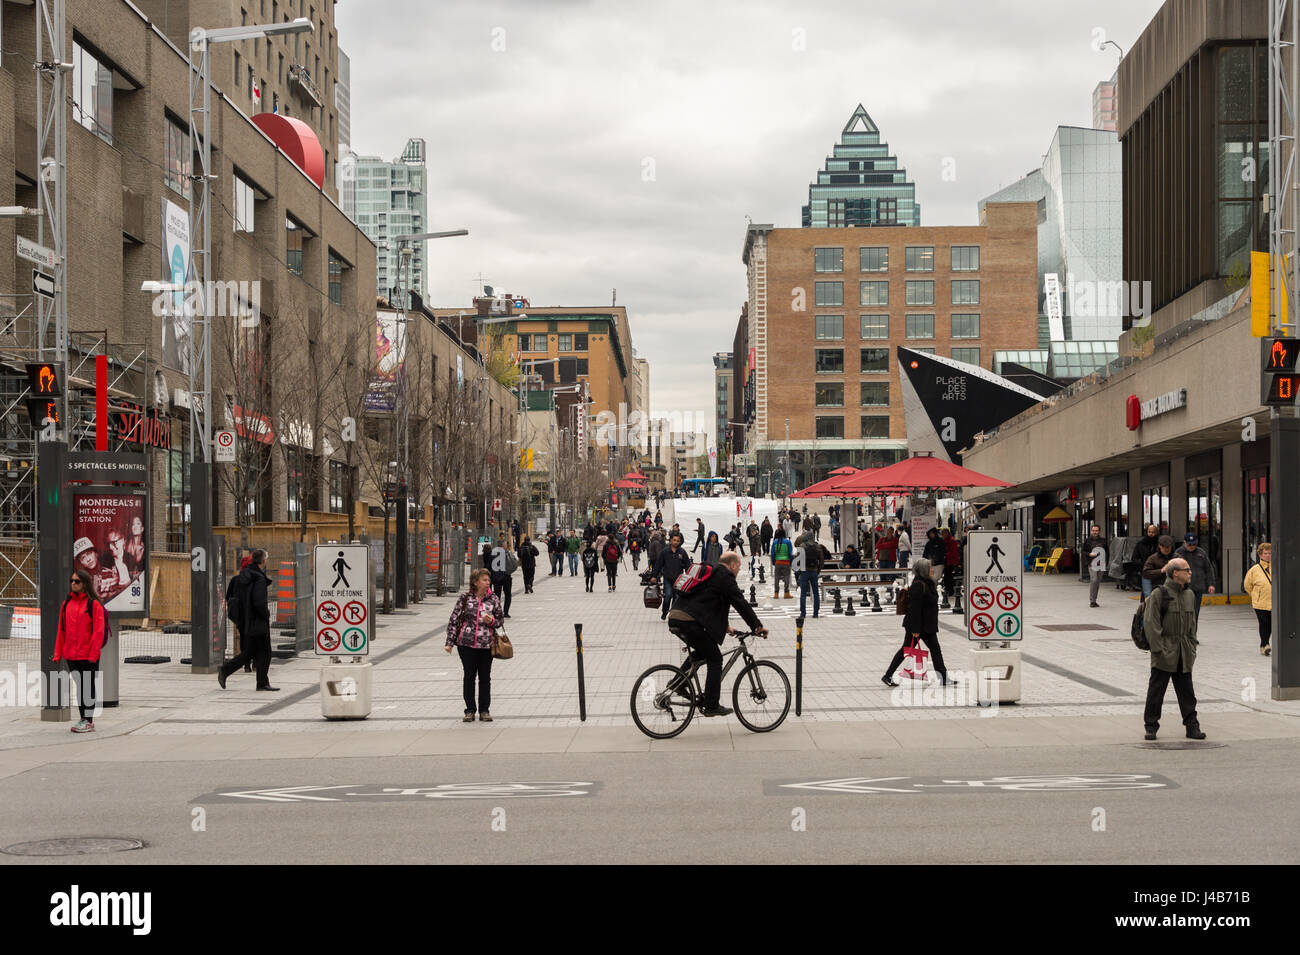 Foule de gens marchant sur la rue Sainte-Catherine à Montréal, au Canada. La rue Sainte-Catherine est la principale artère commerciale de Montréal. Banque D'Images